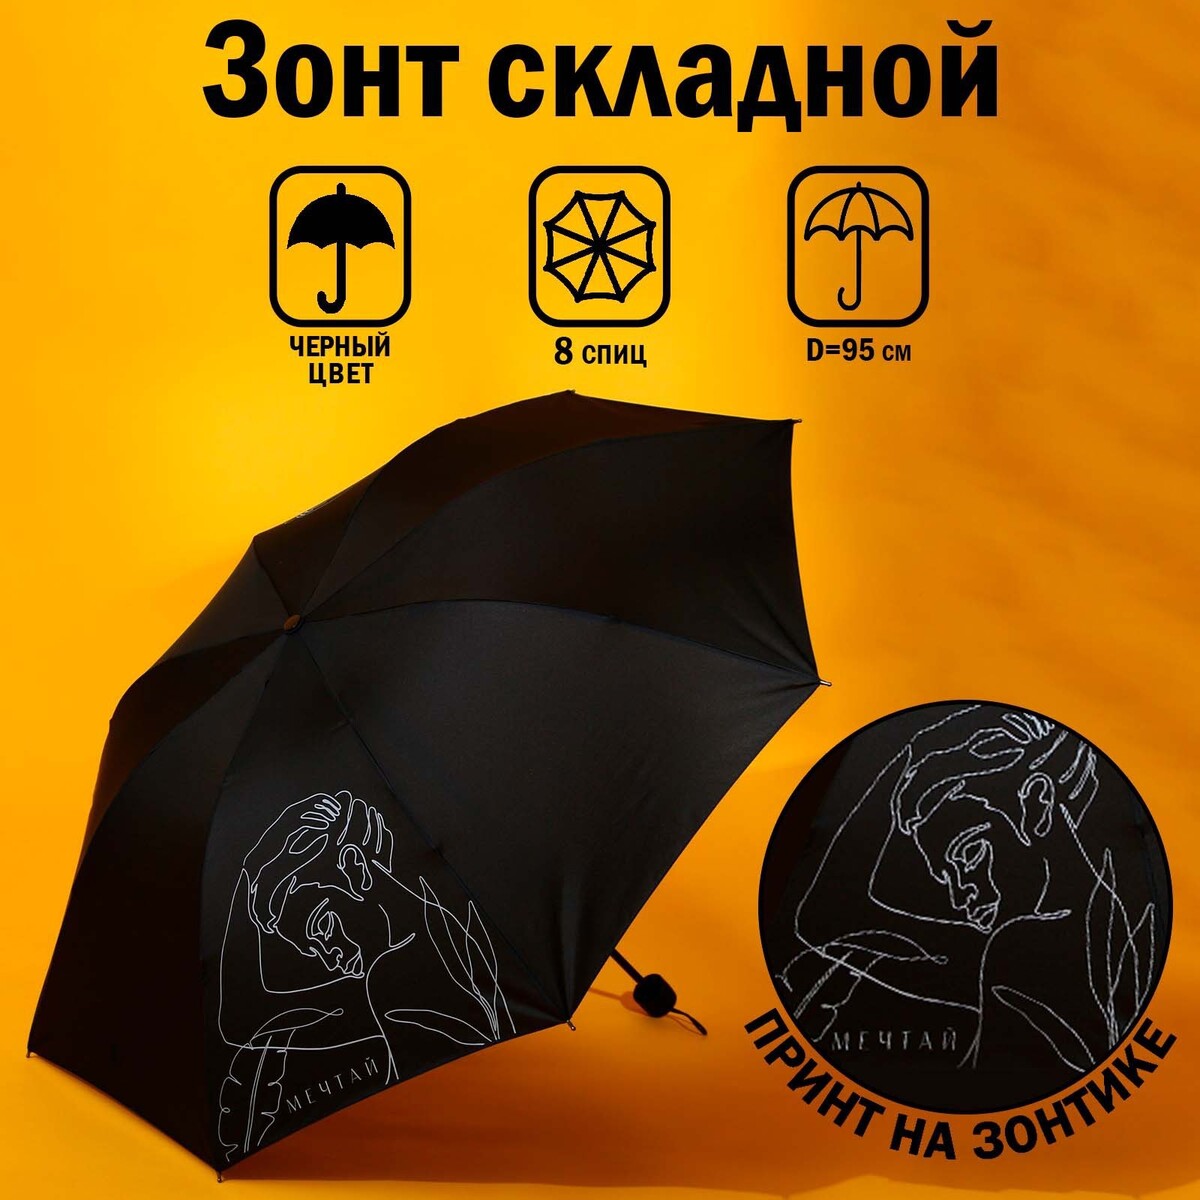 Зонт механический No brand